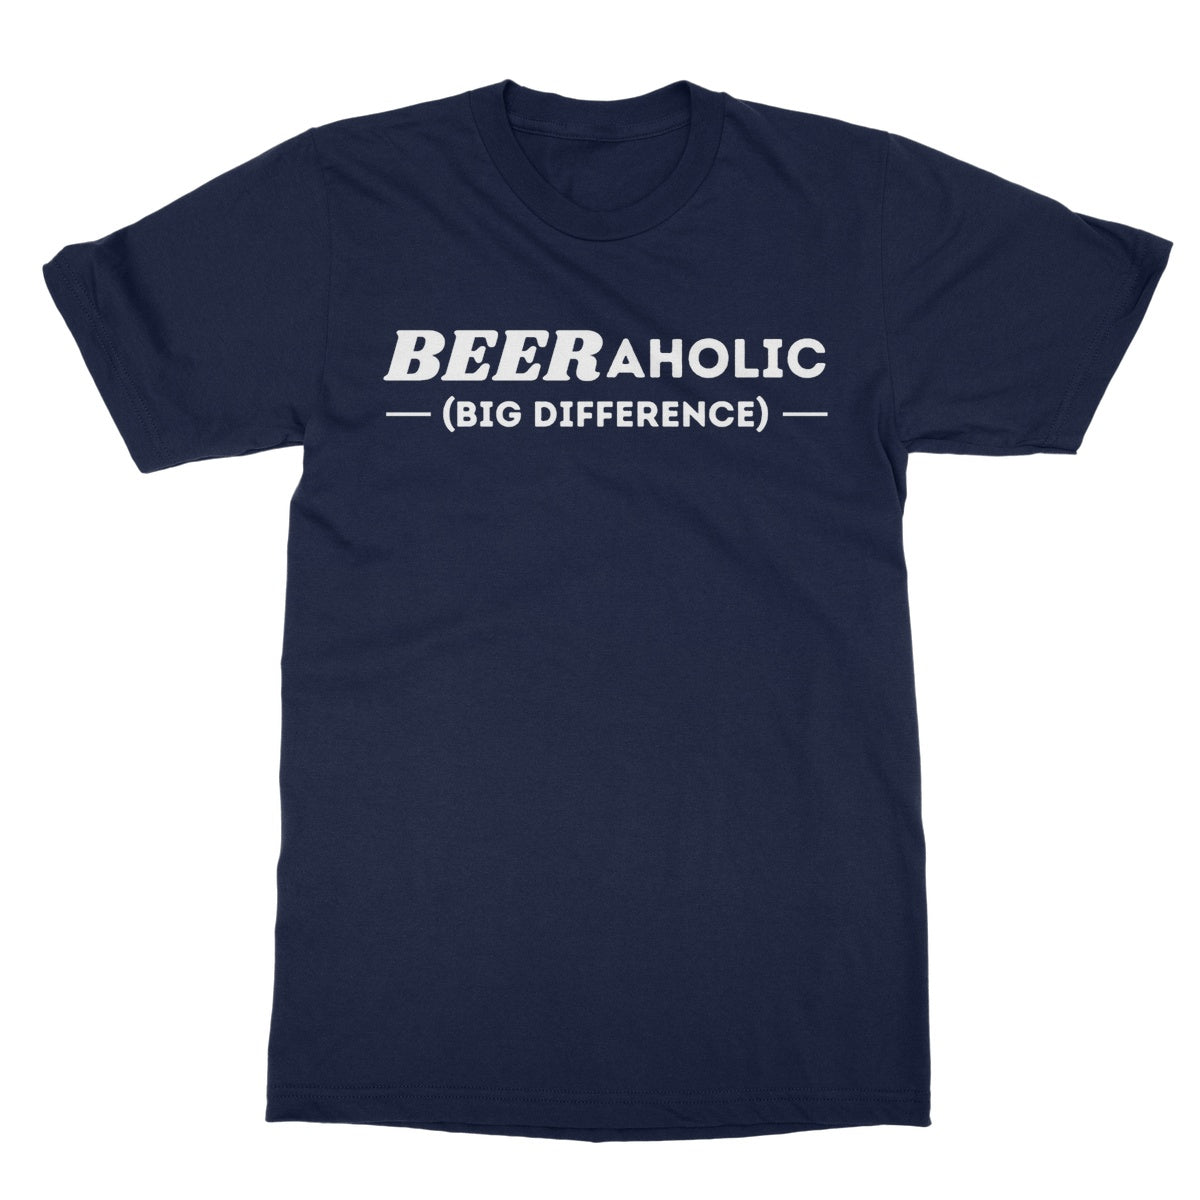 beeraholic t shirt navy